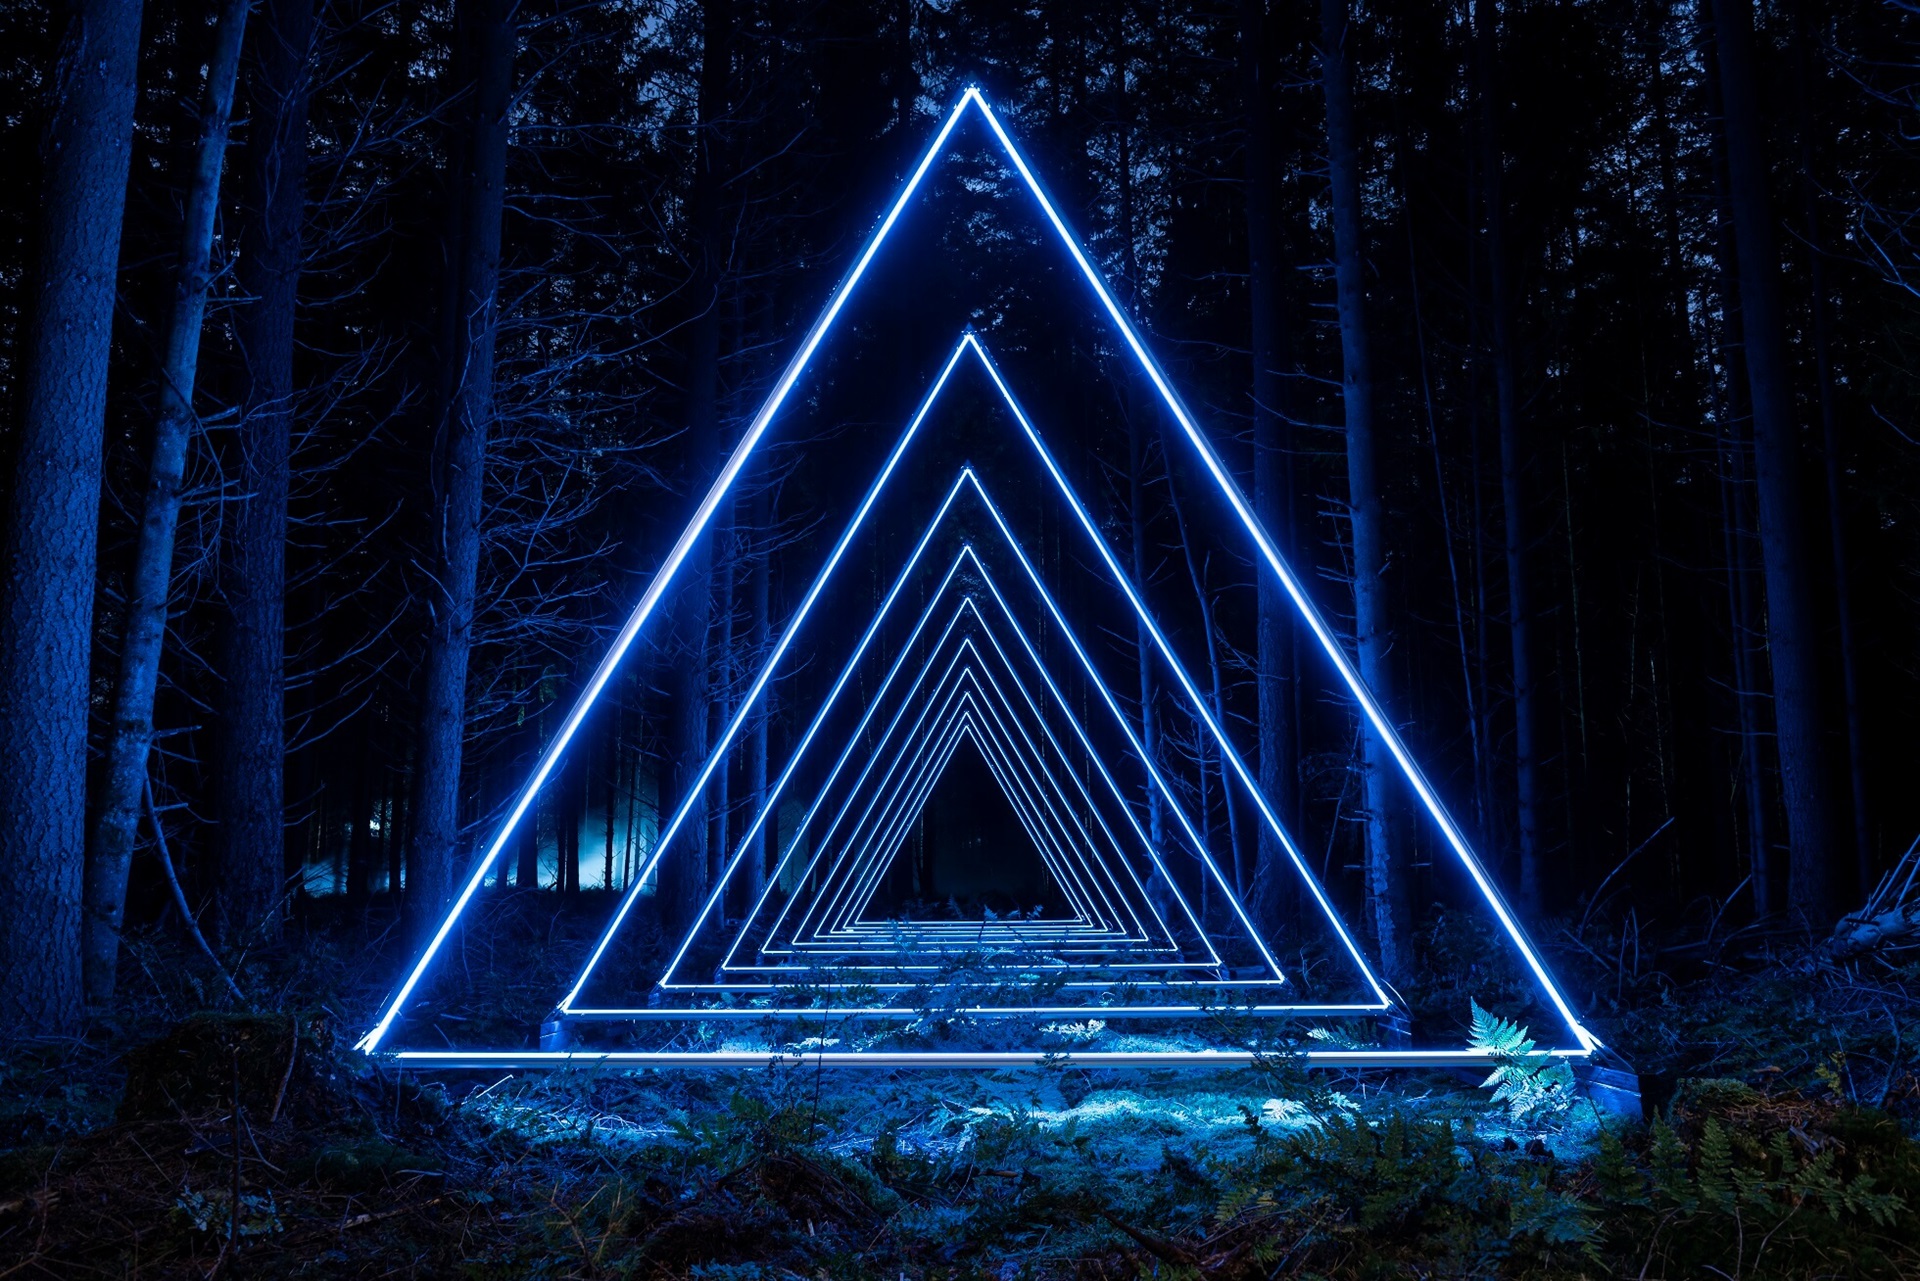 Modré, trojúhelníkové a jasně osvětlené světlo v temném lese